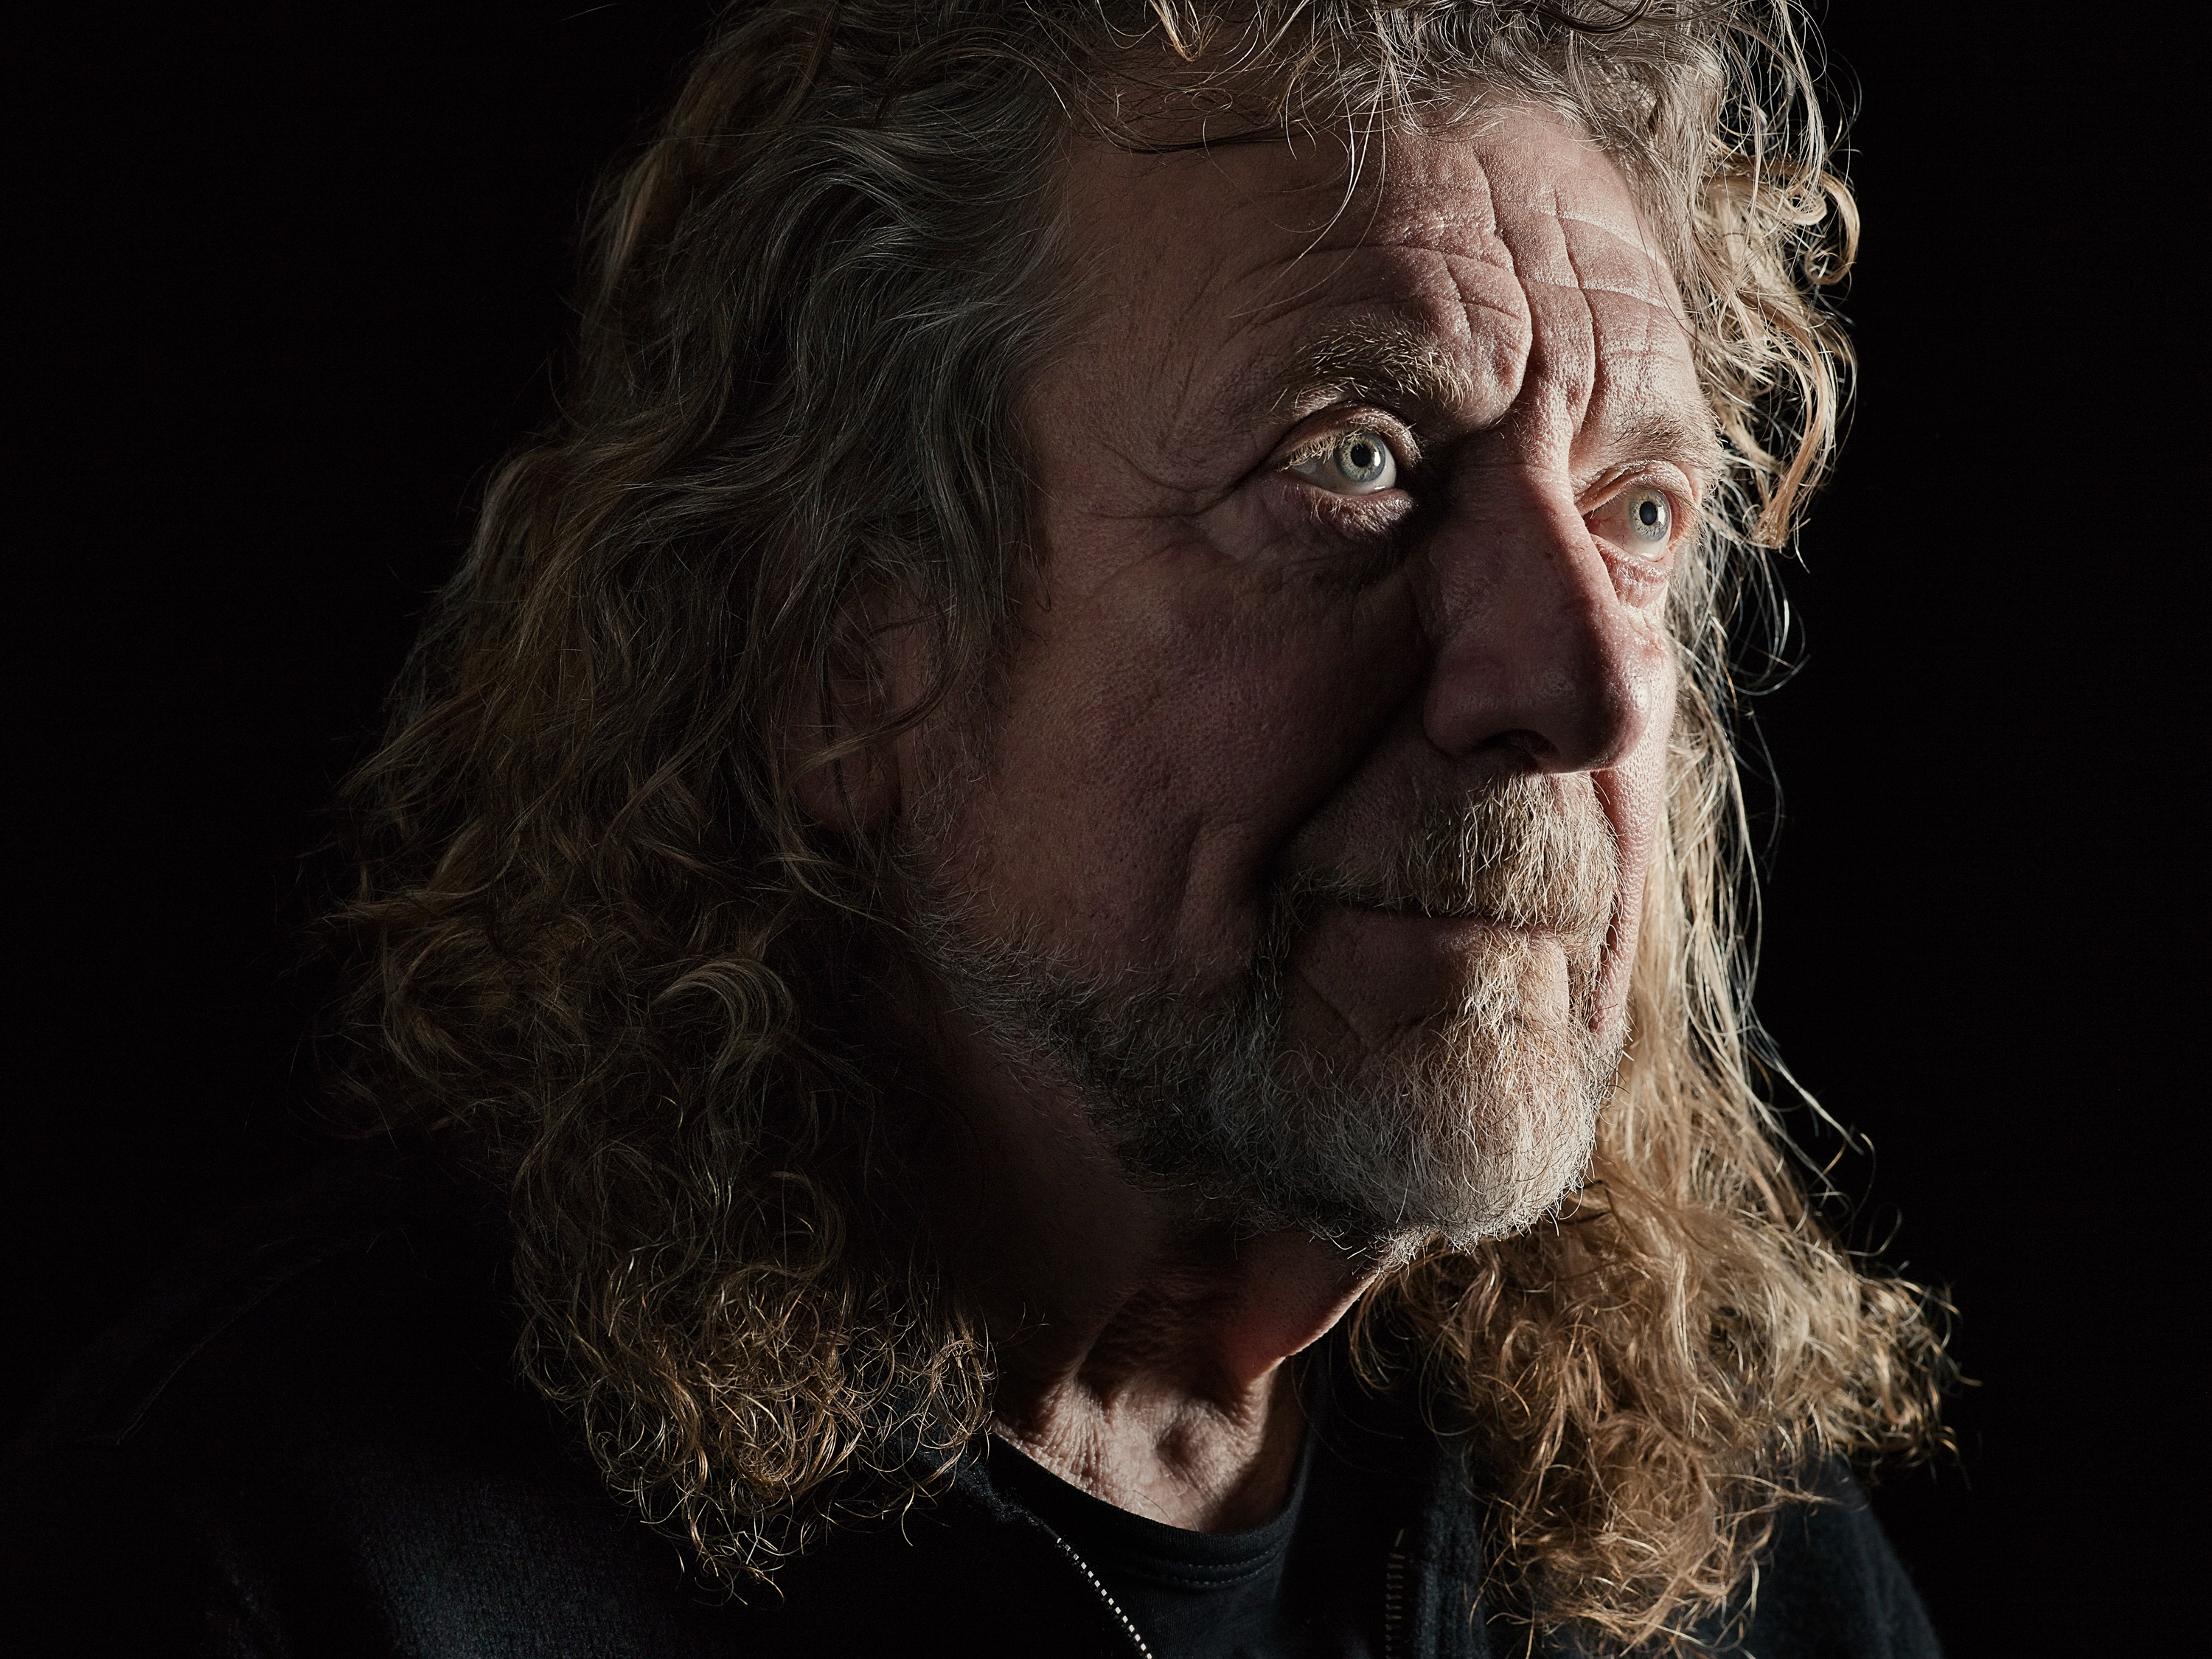 Robert Plant - Led Zeppelin